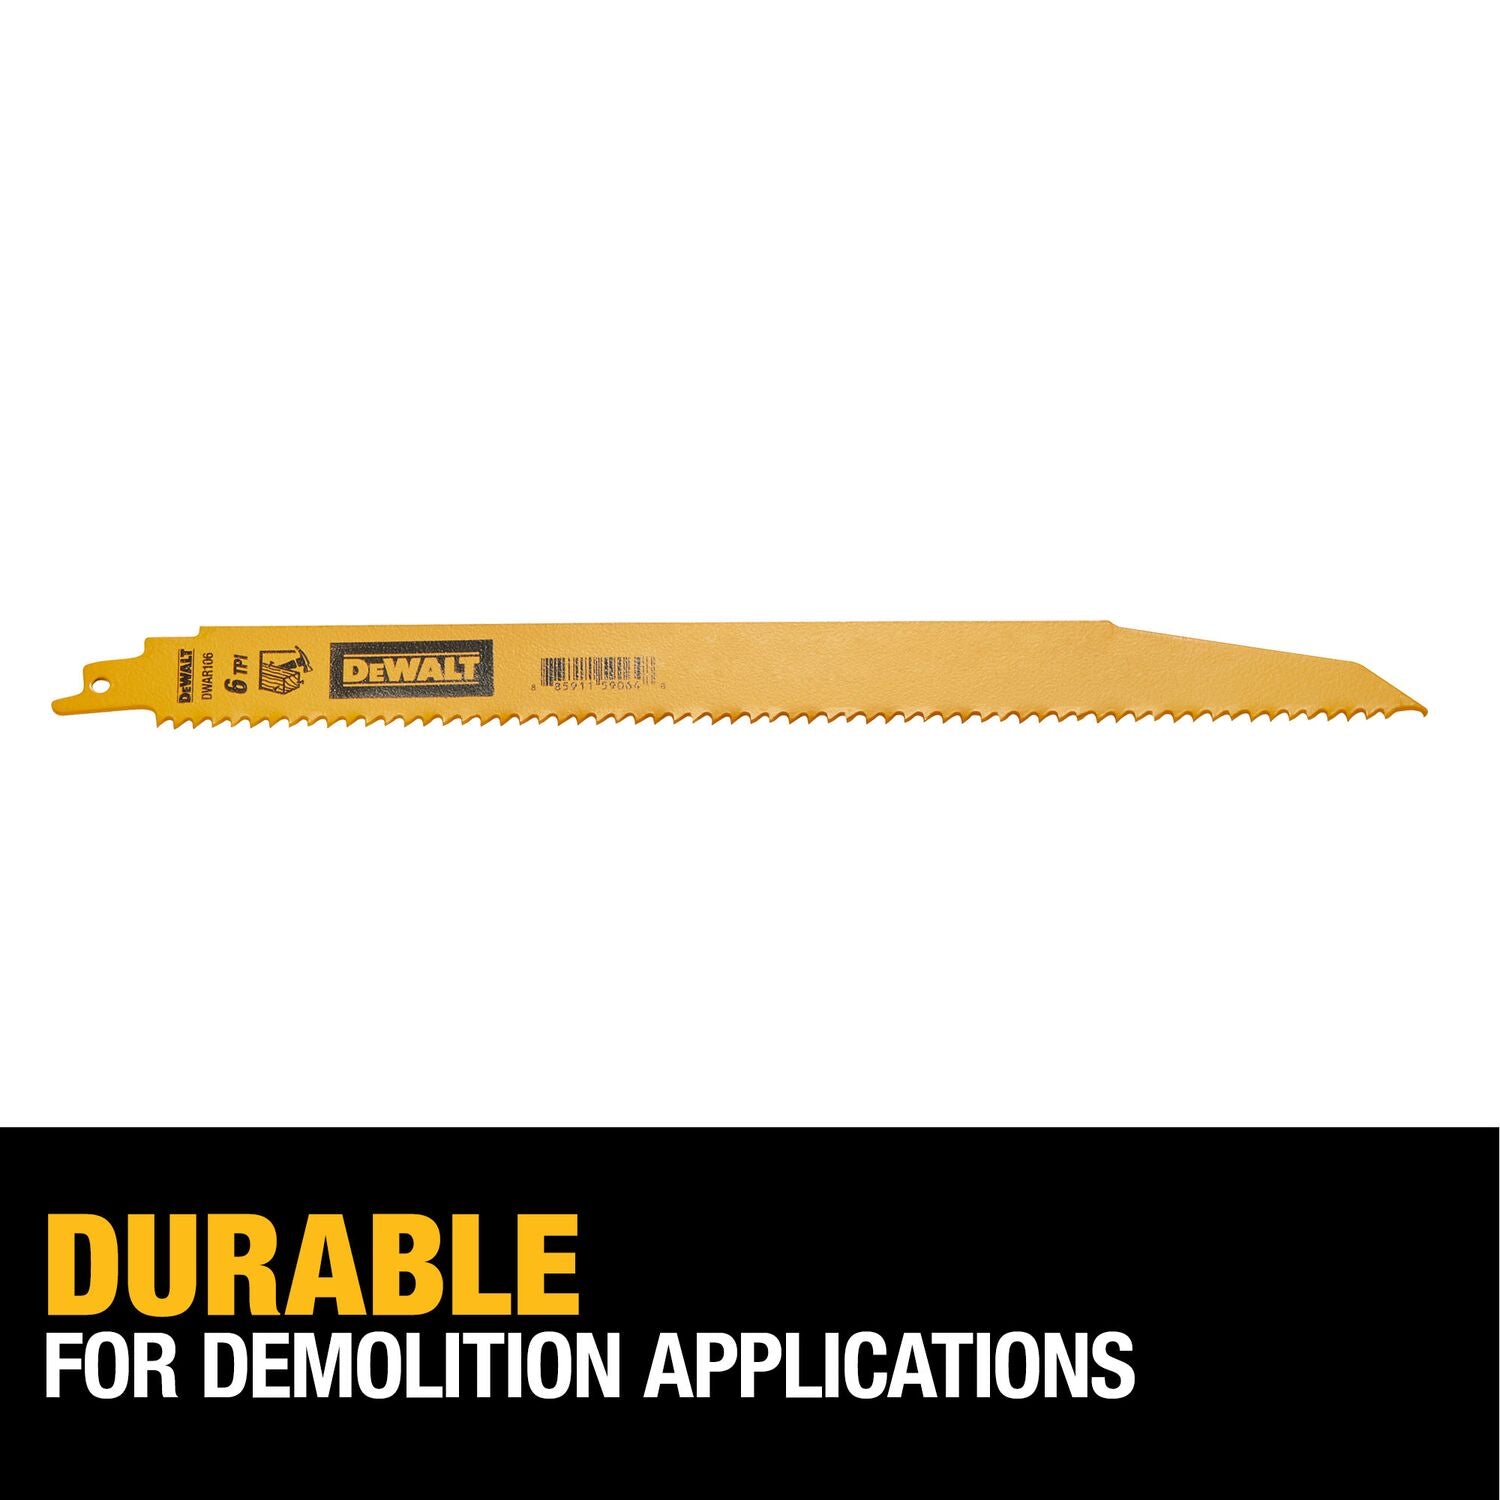 DeWALT - DWAR106 - 5-Pack 12-in 6-TPI Demolition Reciprocating Saw Blade